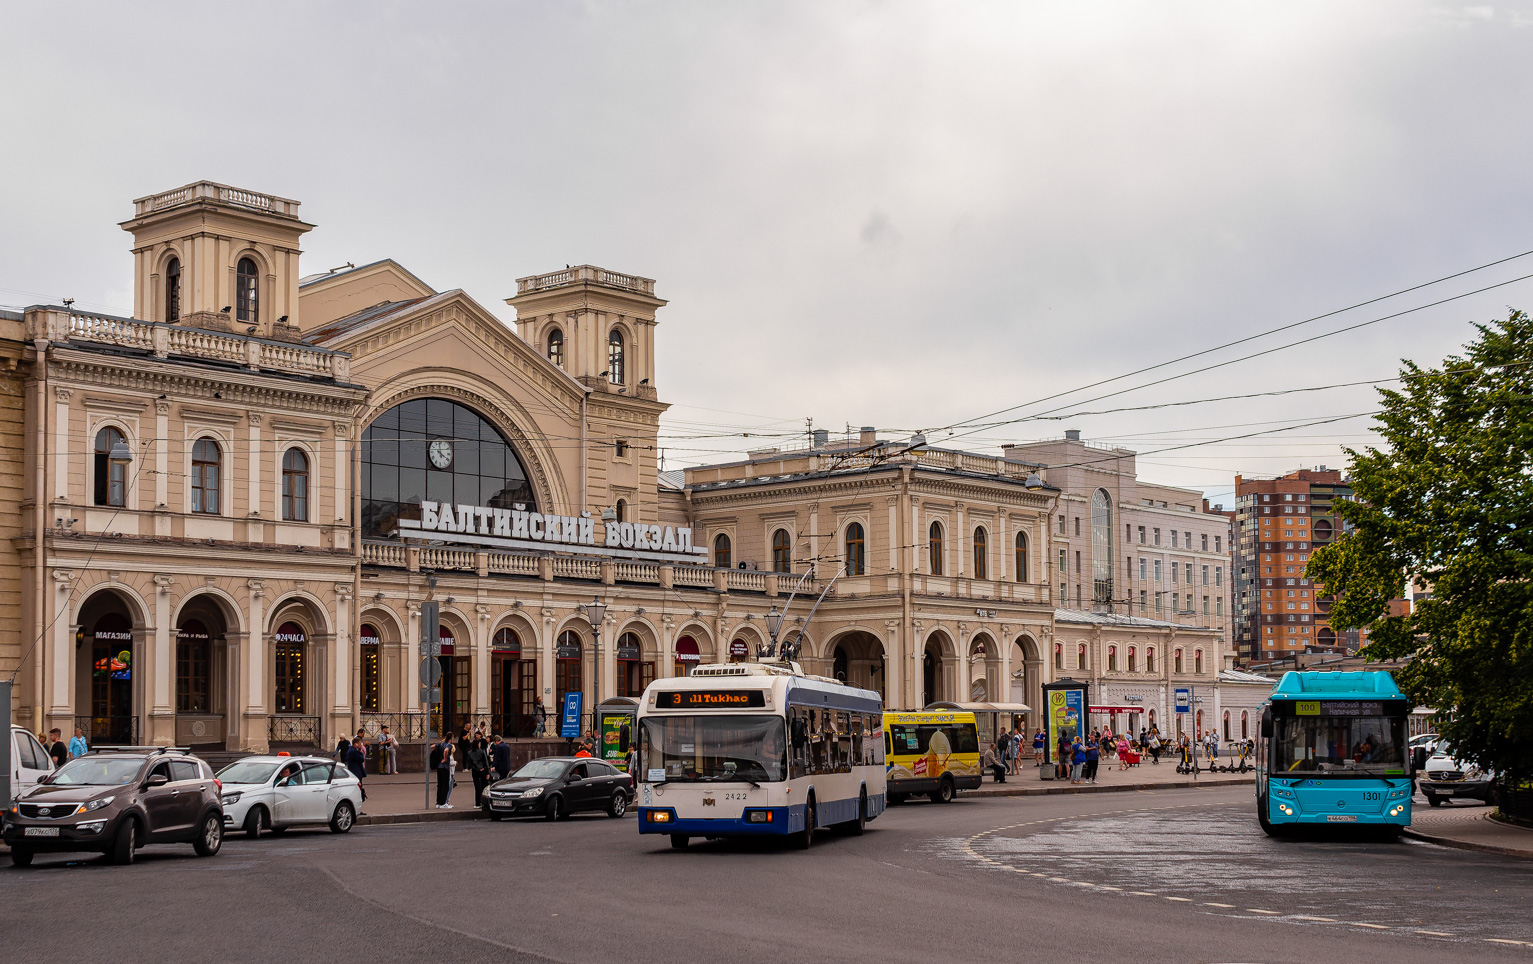 Sanktpēterburga, BKM 321 № 2422; Sanktpēterburga — Terminal stations